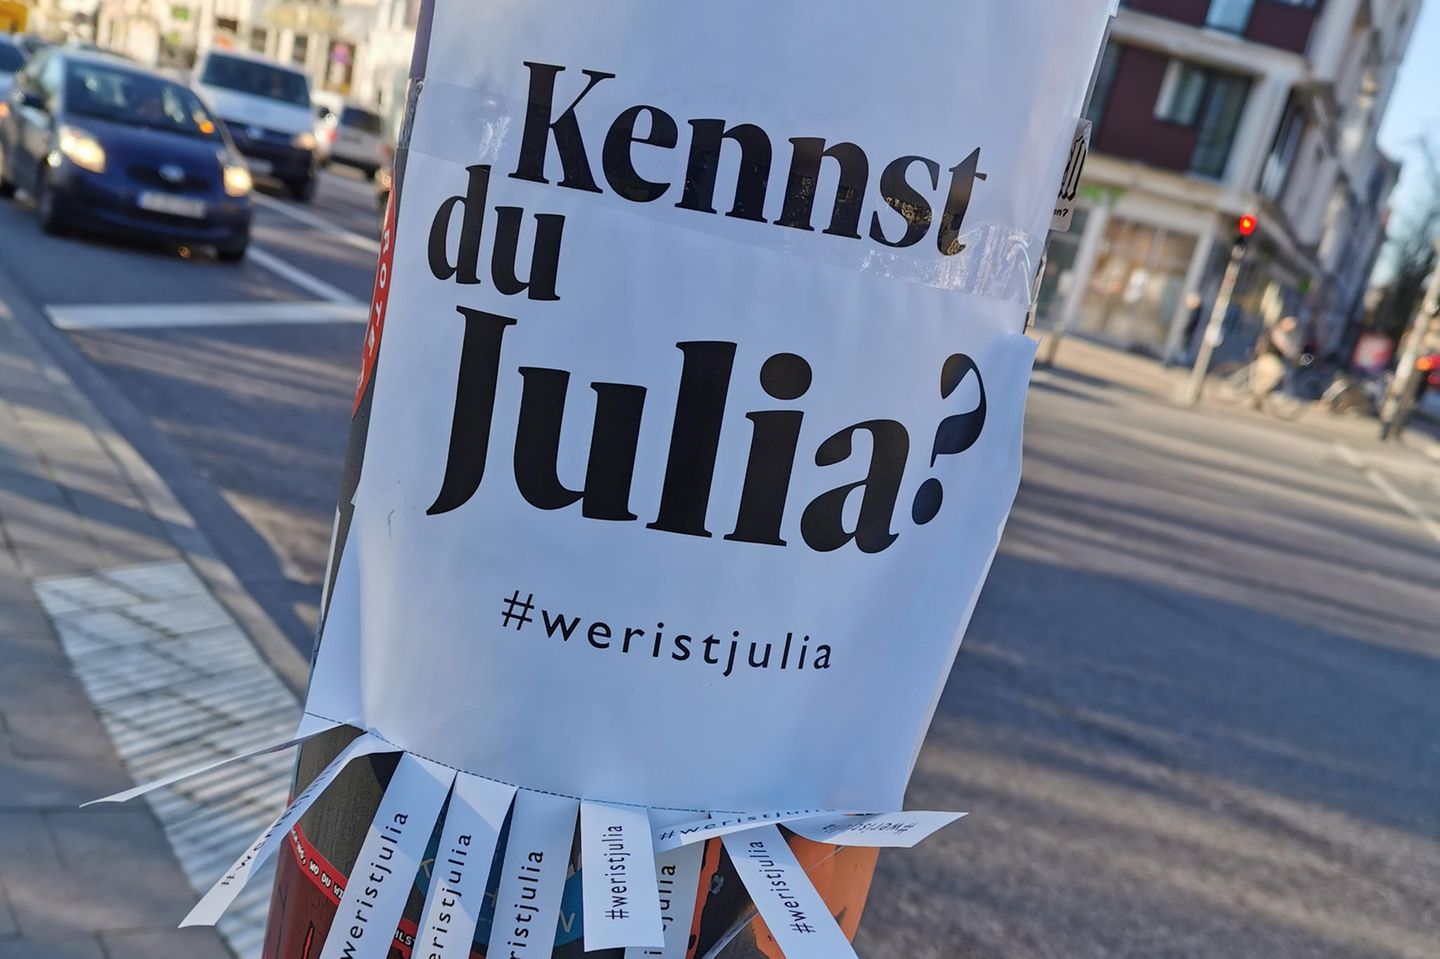 Wer ist Julia? Exklusiv: Rätsel um #weristjulia gelöst!